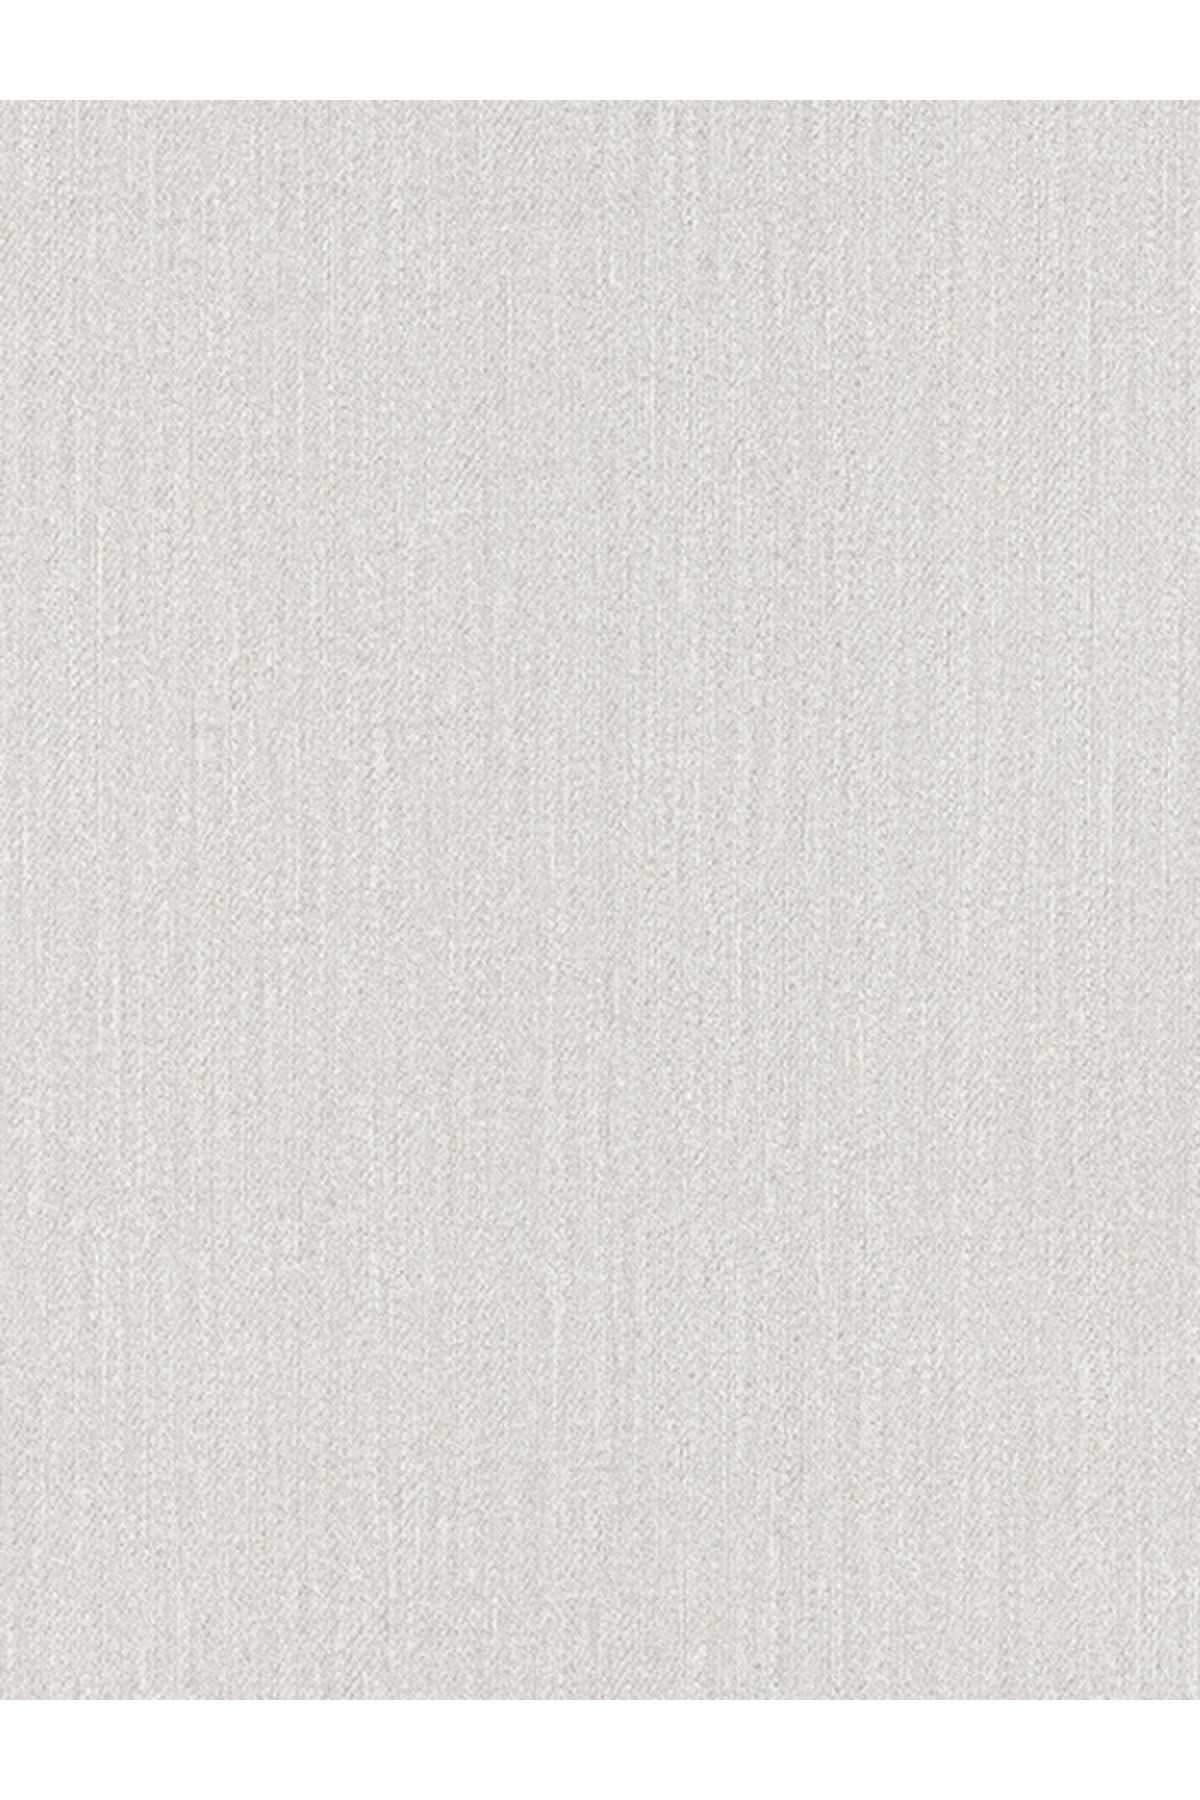 Decowall Düz Desen Simli Beyaz Duvar Kağıdı 410-02 MAKİ DK